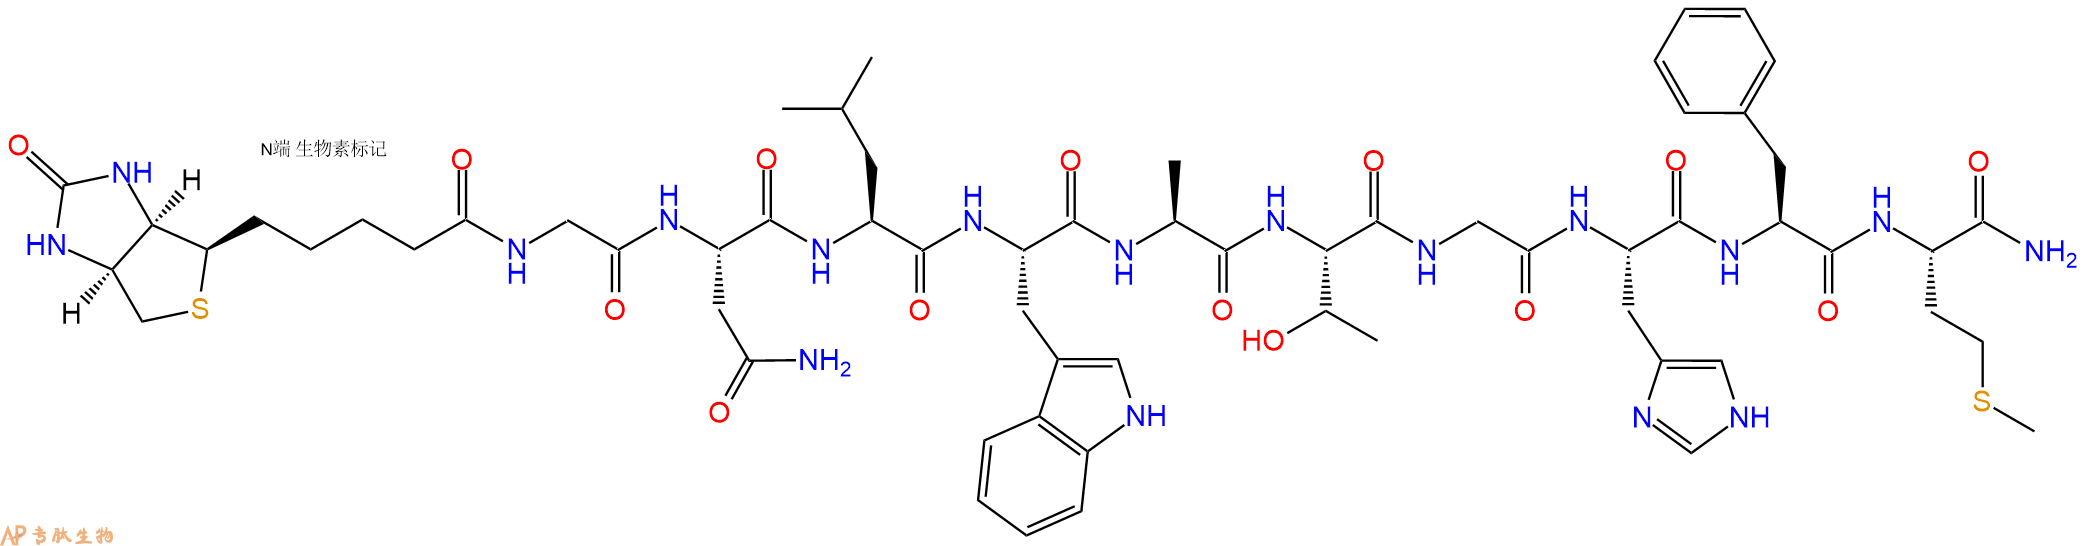 专肽生物产品神经调节肽Biotin-Neuromedin B